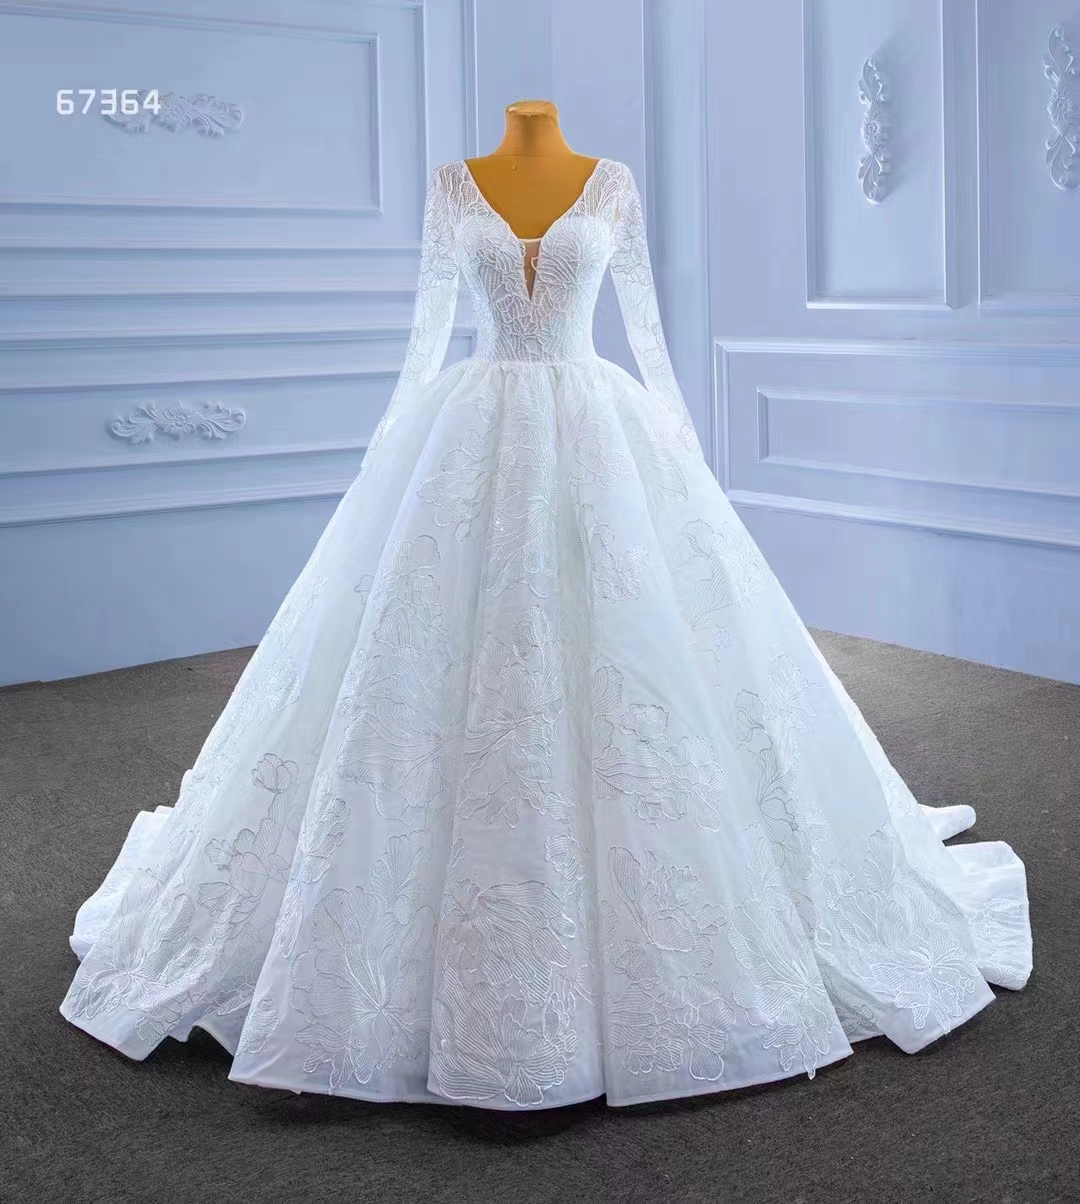 Witte tule kalkoenballen met lange mouwen Witte tulle kalkoenbal jurk elegante trouwjurk sm67364